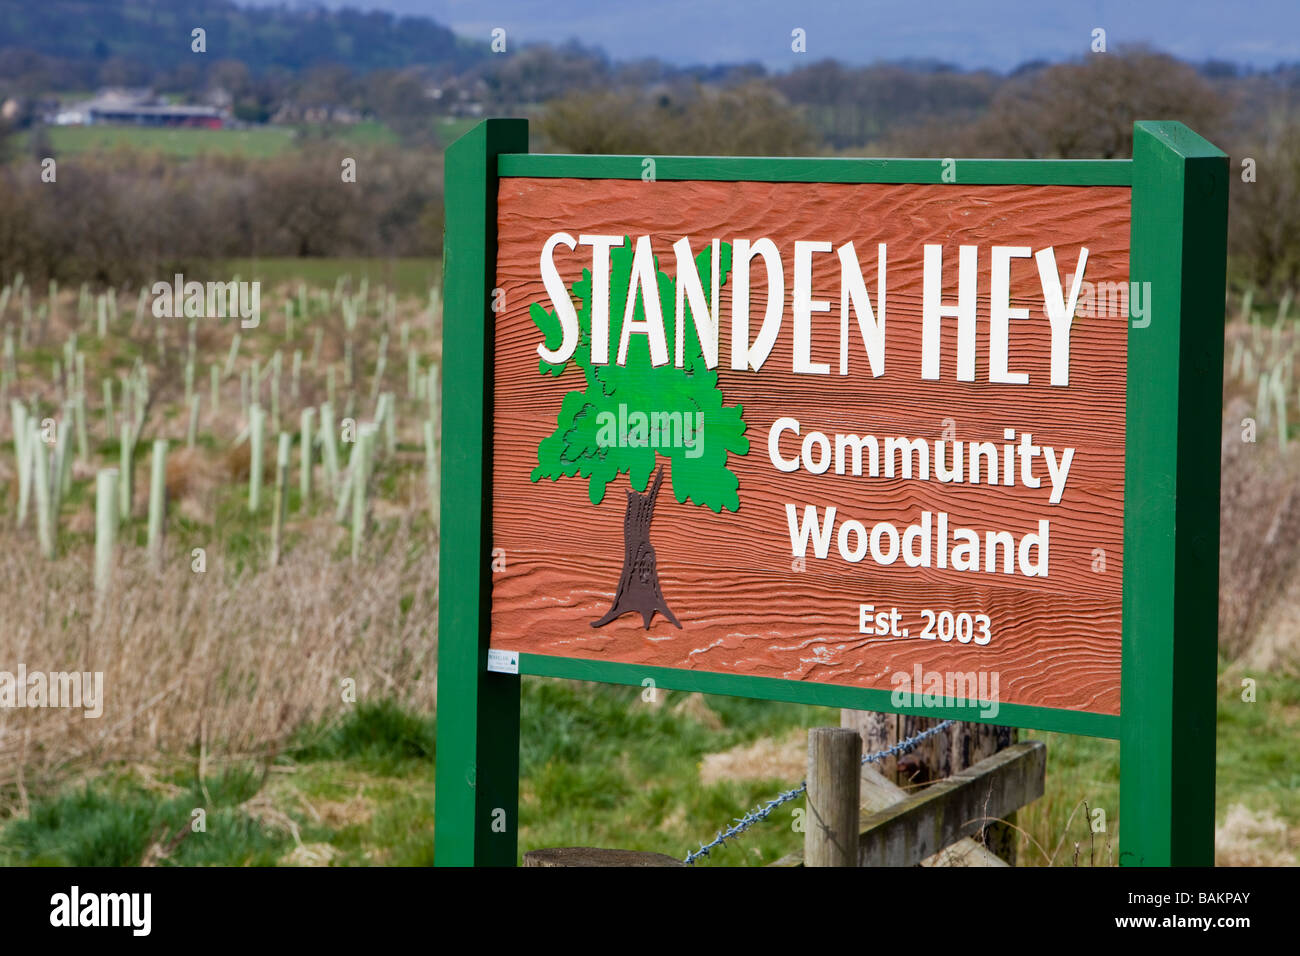 Standen Hey community woodland near Clitheroe Lancashire UK Stock Photo